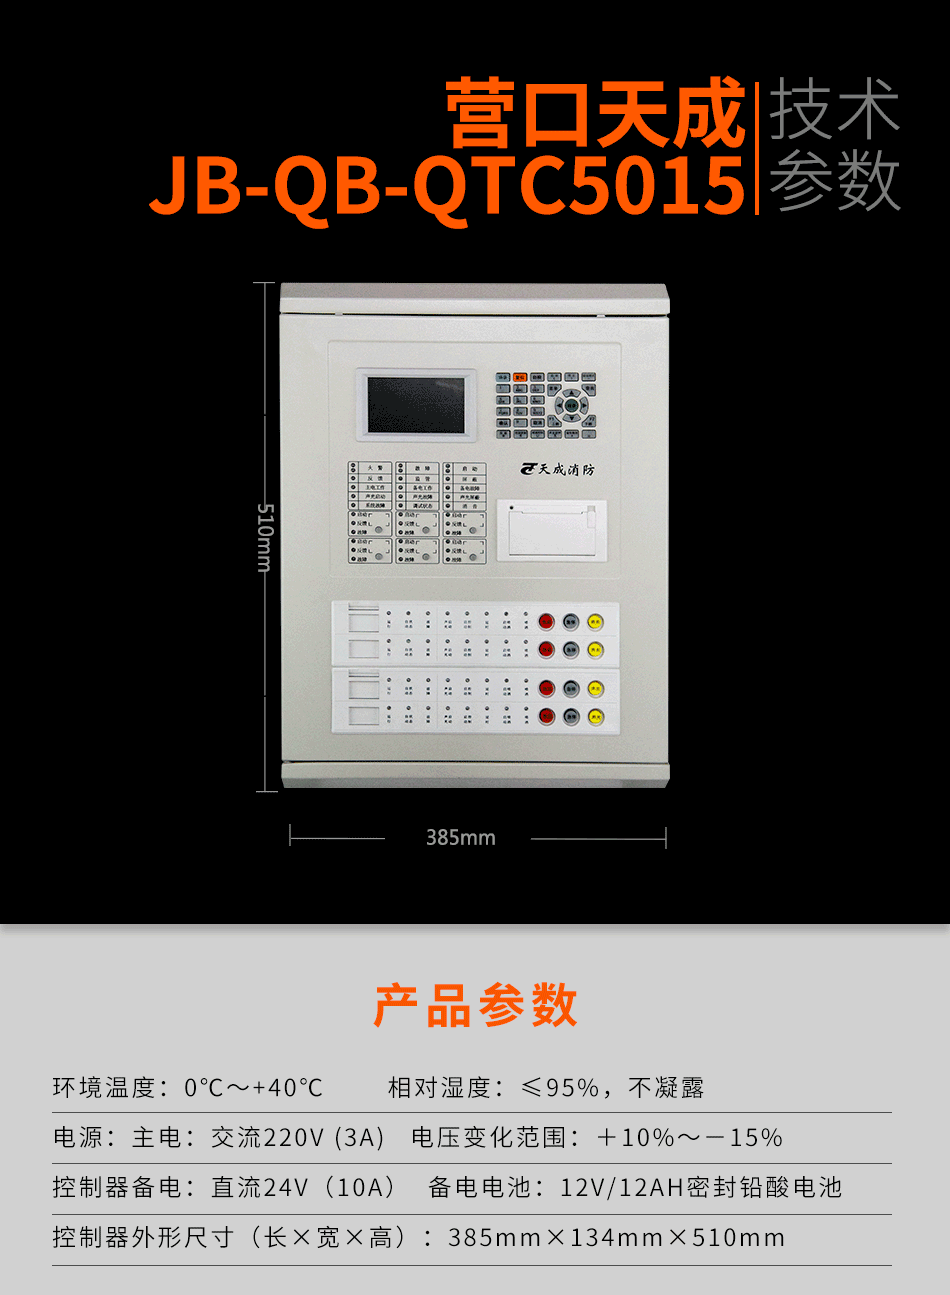 JB-QB-QTC5015气体灭火控制器参数